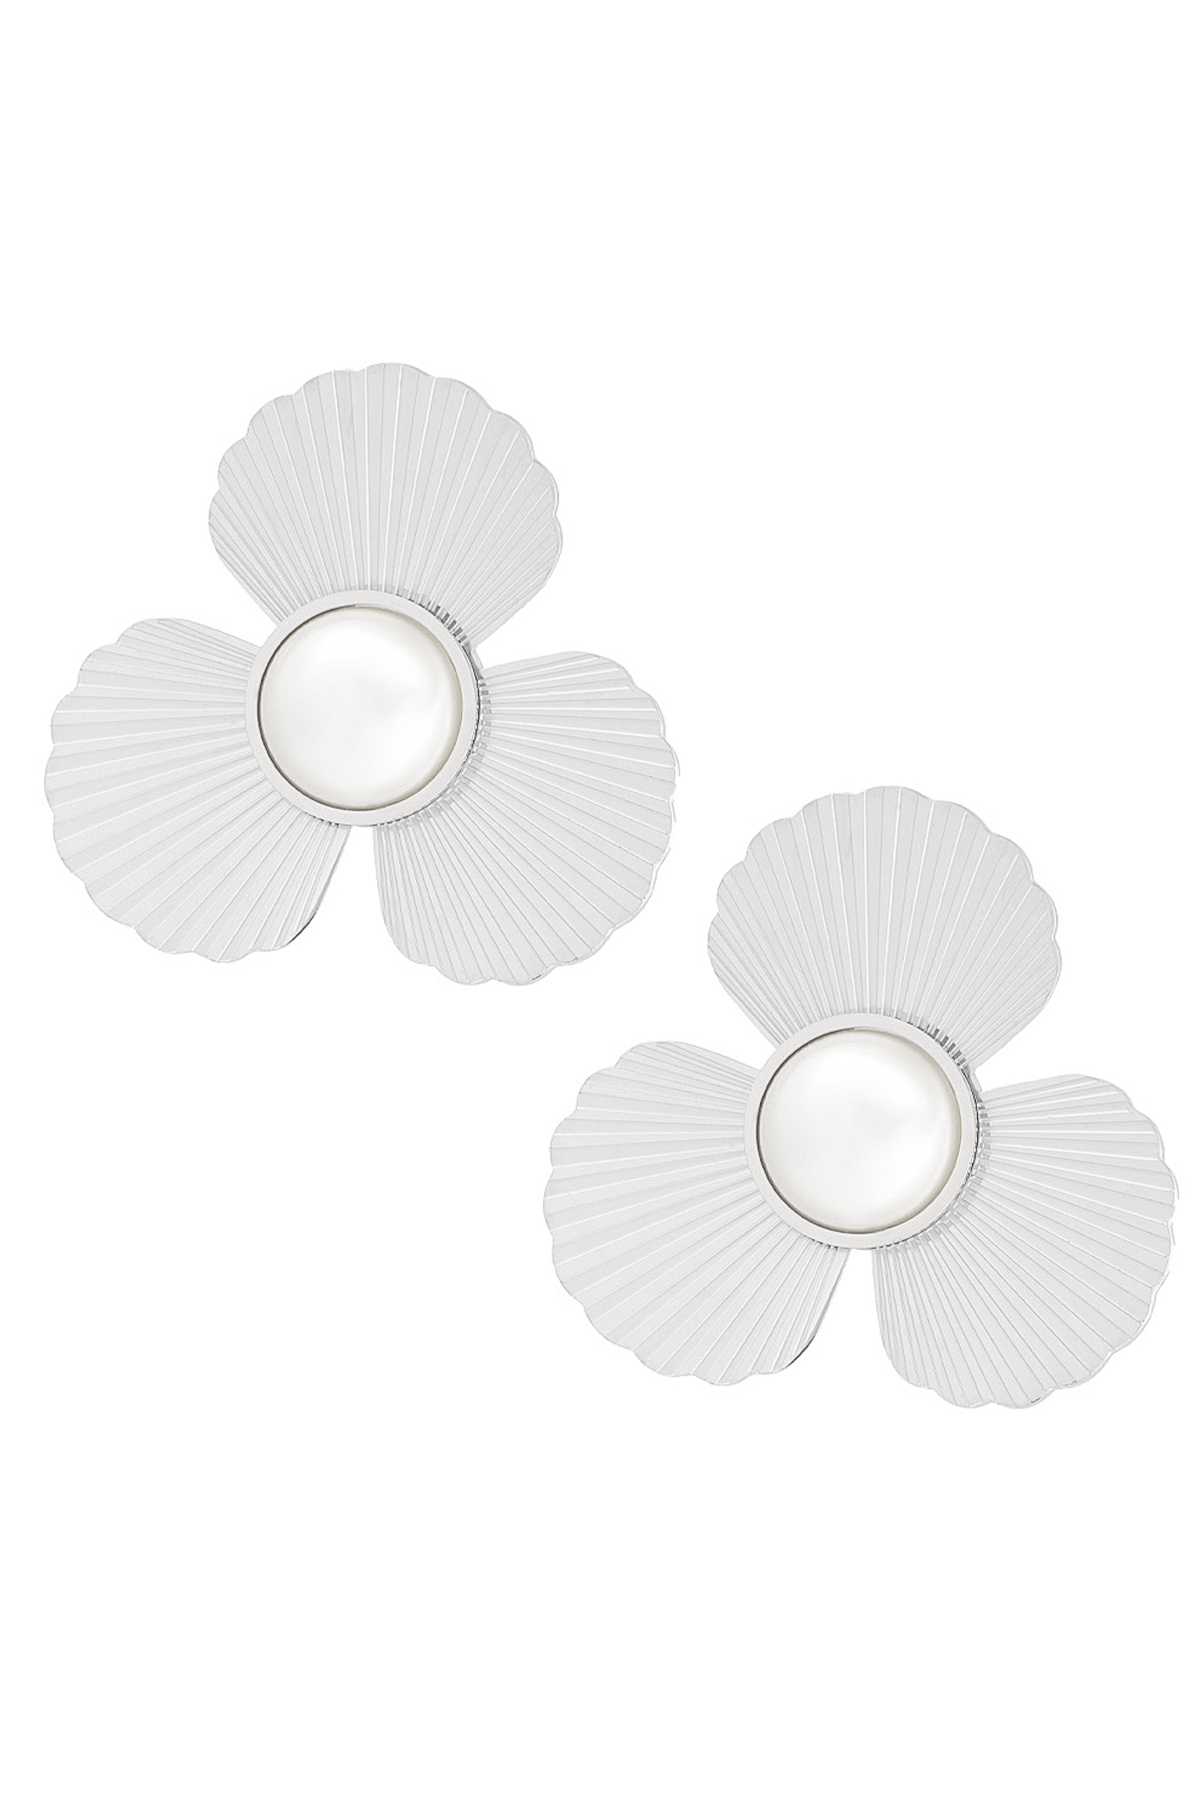 Ohrringe Blume mit Perle - Silber h5 